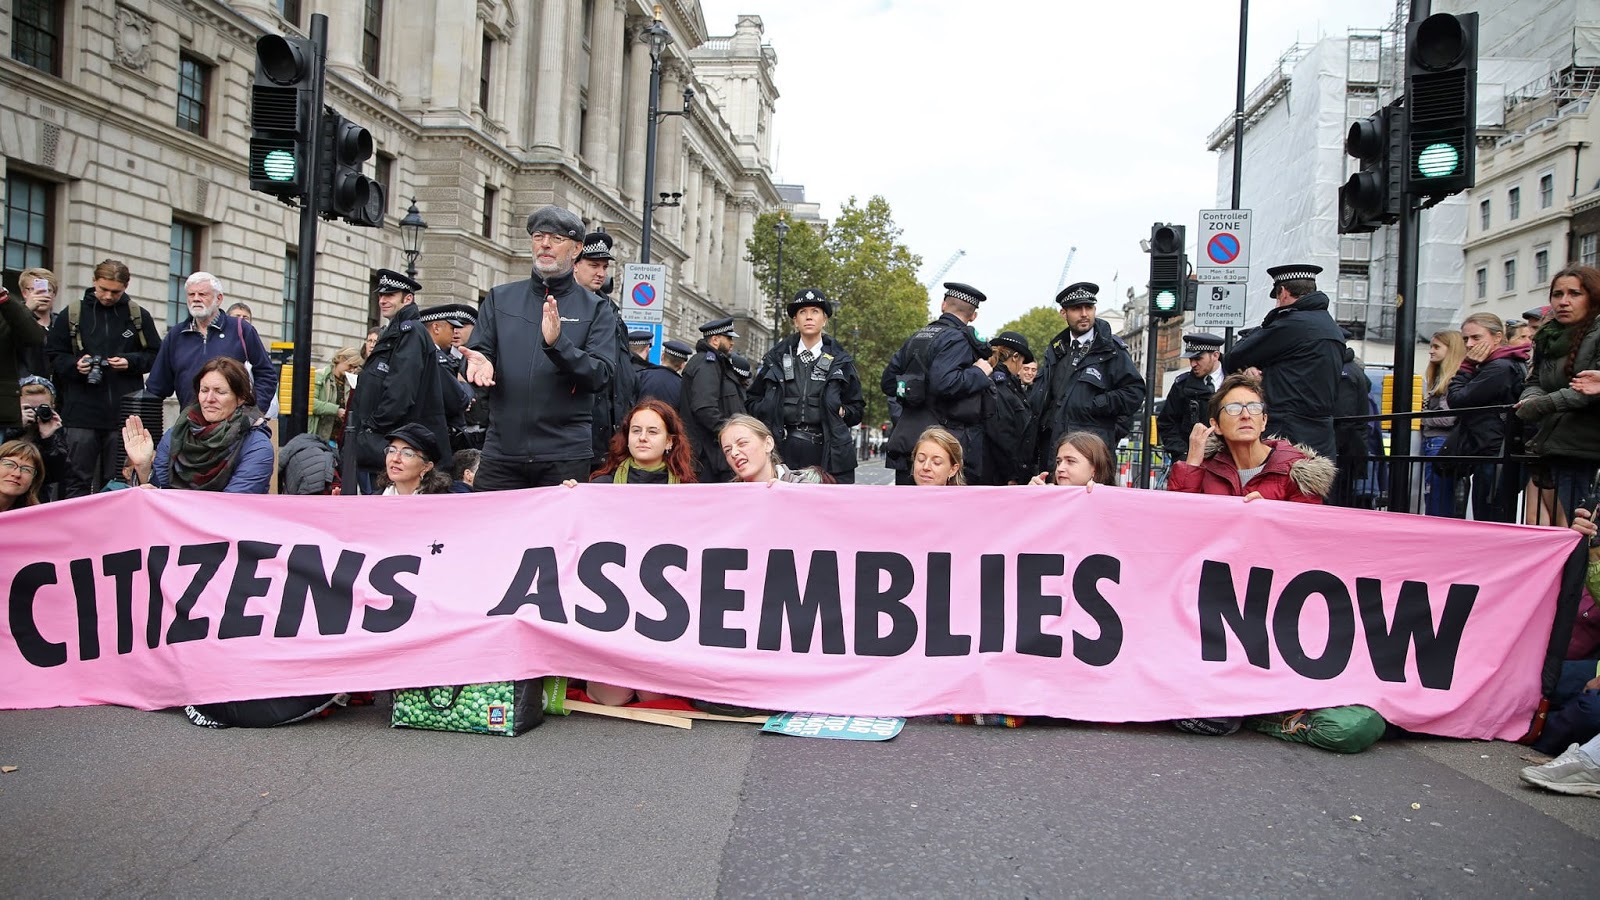 Immagine di manifestanti che bloccano una strada con uno striscione grandecon la scritta "assemblee dei cittadiniadesso".